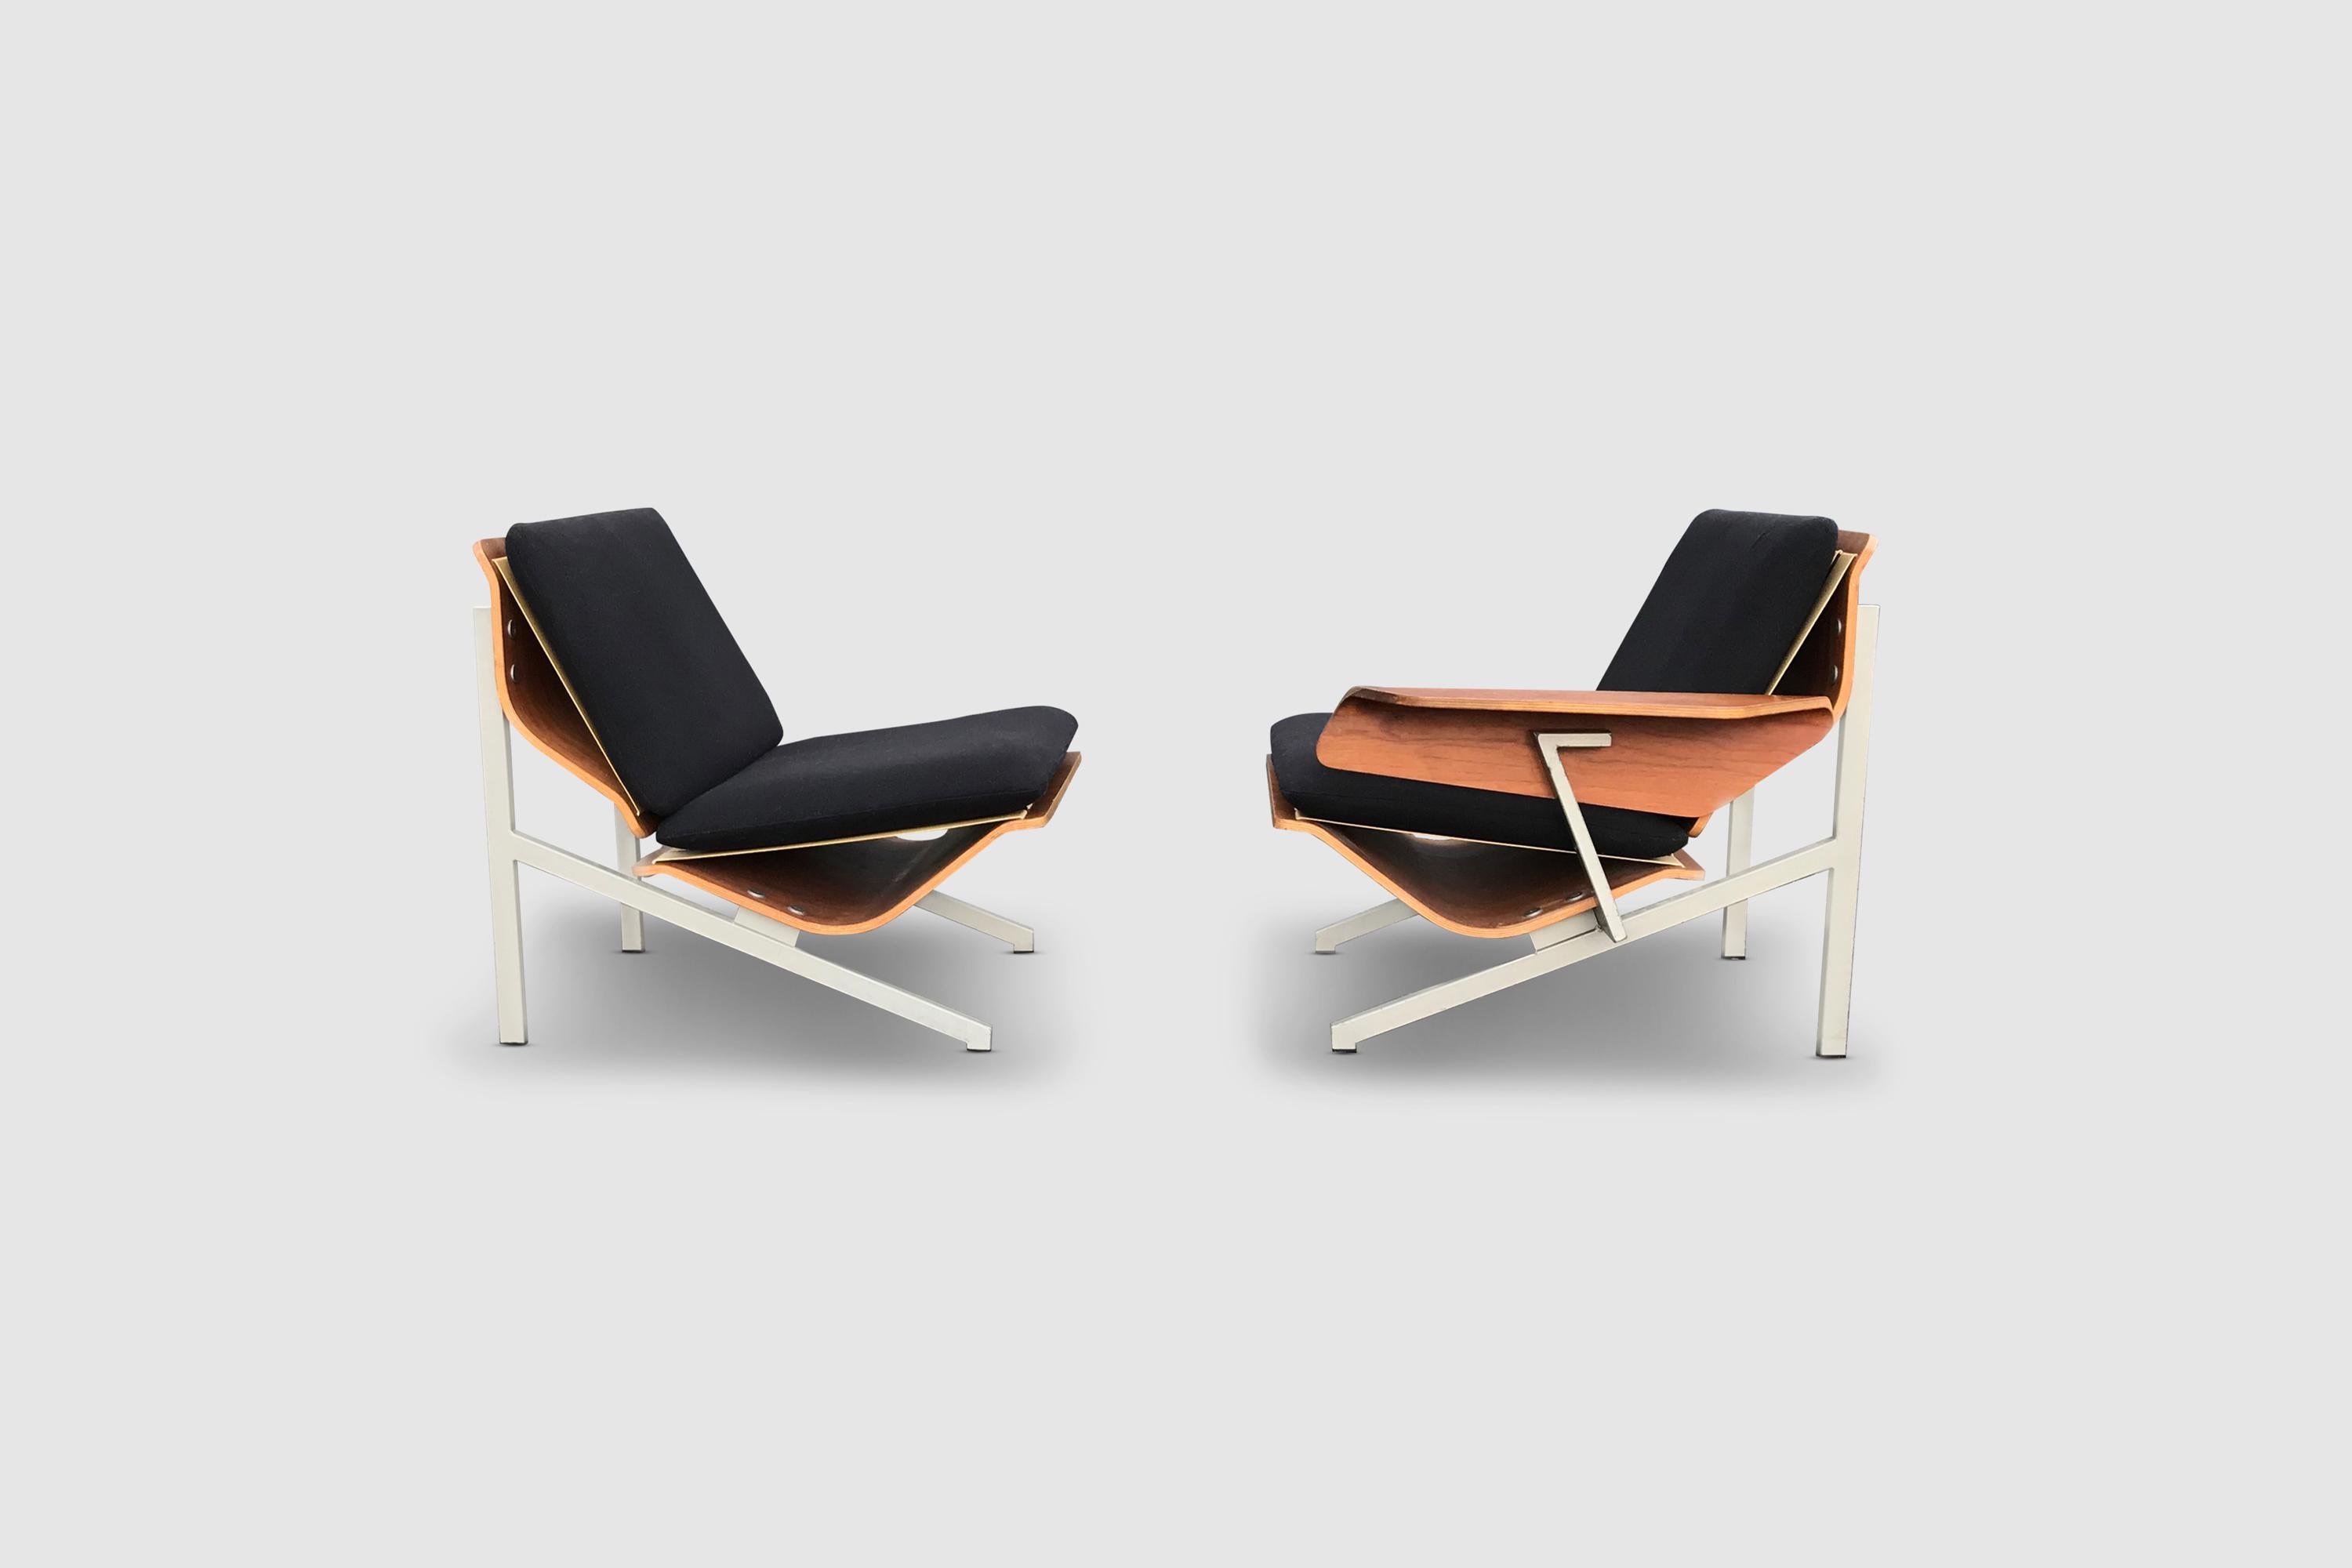 La série FM a été dessinée par Cornelis Zitman, un artiste et sculpteur néerlandais qui a prêté ses capacités créatives à UMS Pastoe pour le développement d'un ensemble de chaises, de fauteuils et de canapés au design distinctif.

Les modèles